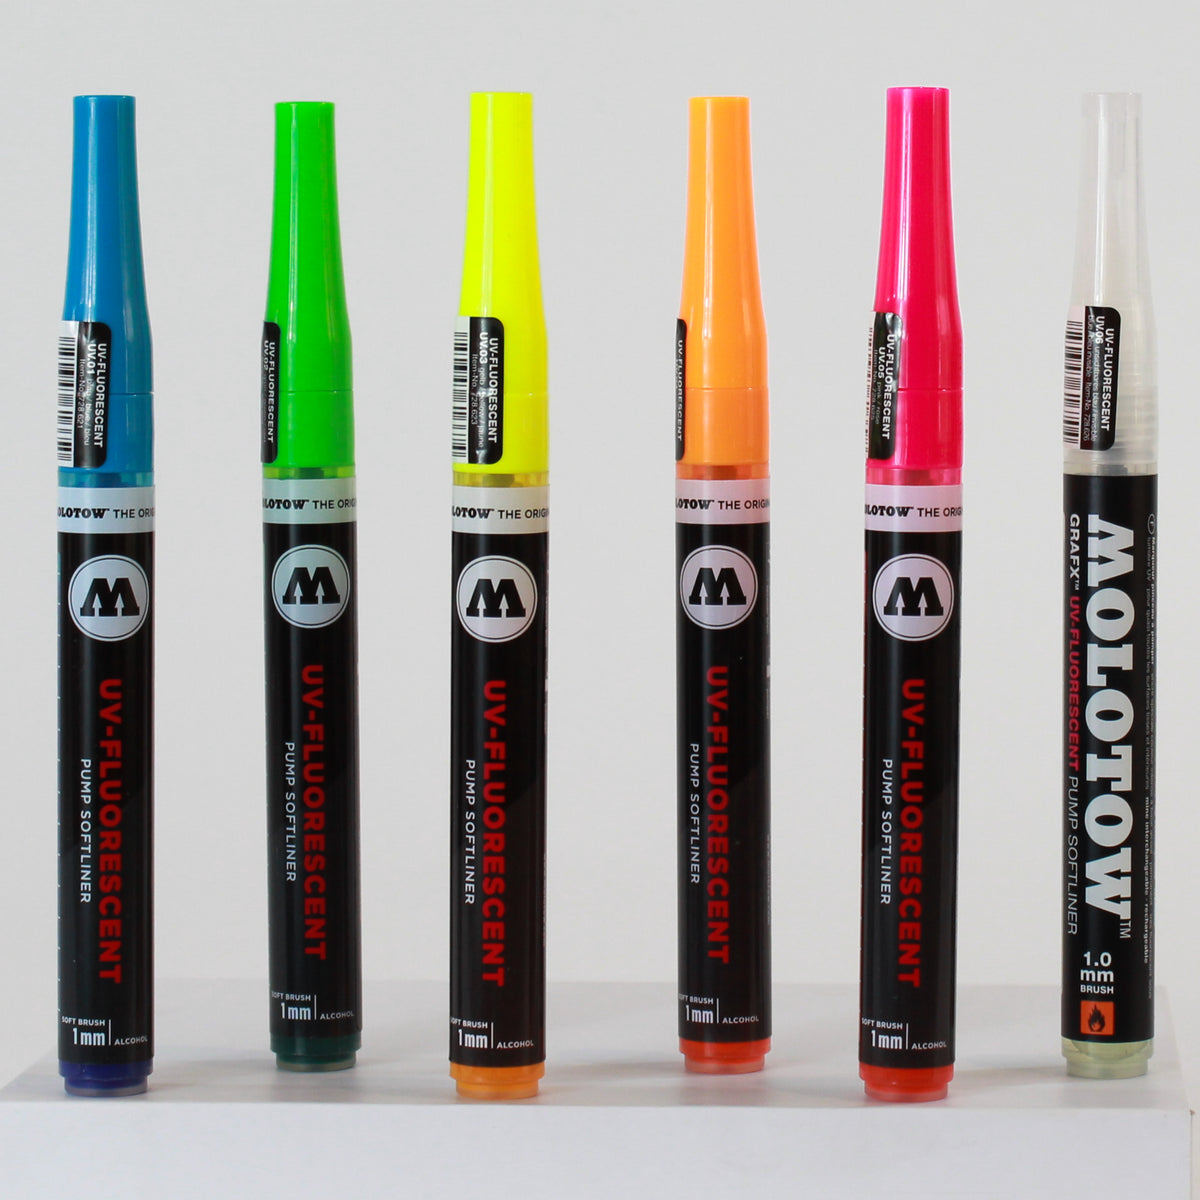 Feutre pinceau UV-Fluorescent Molotow - Basic set 6 coloris